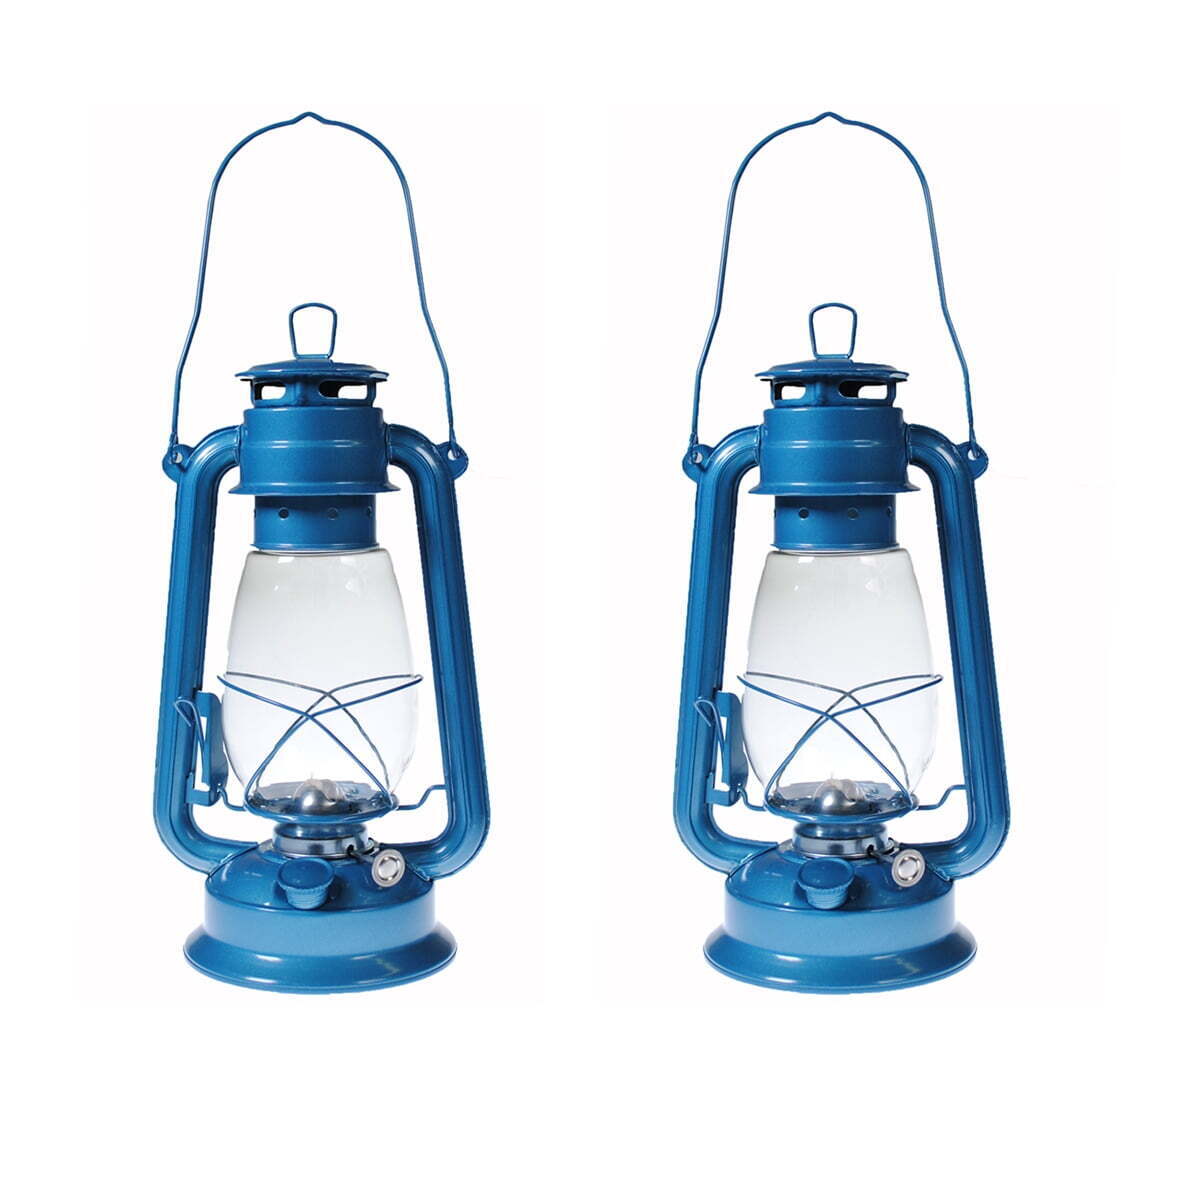 Hurricane Kerosene Oil Lantern Emergency Hanging Light Lamp - BLUE 12 Inches